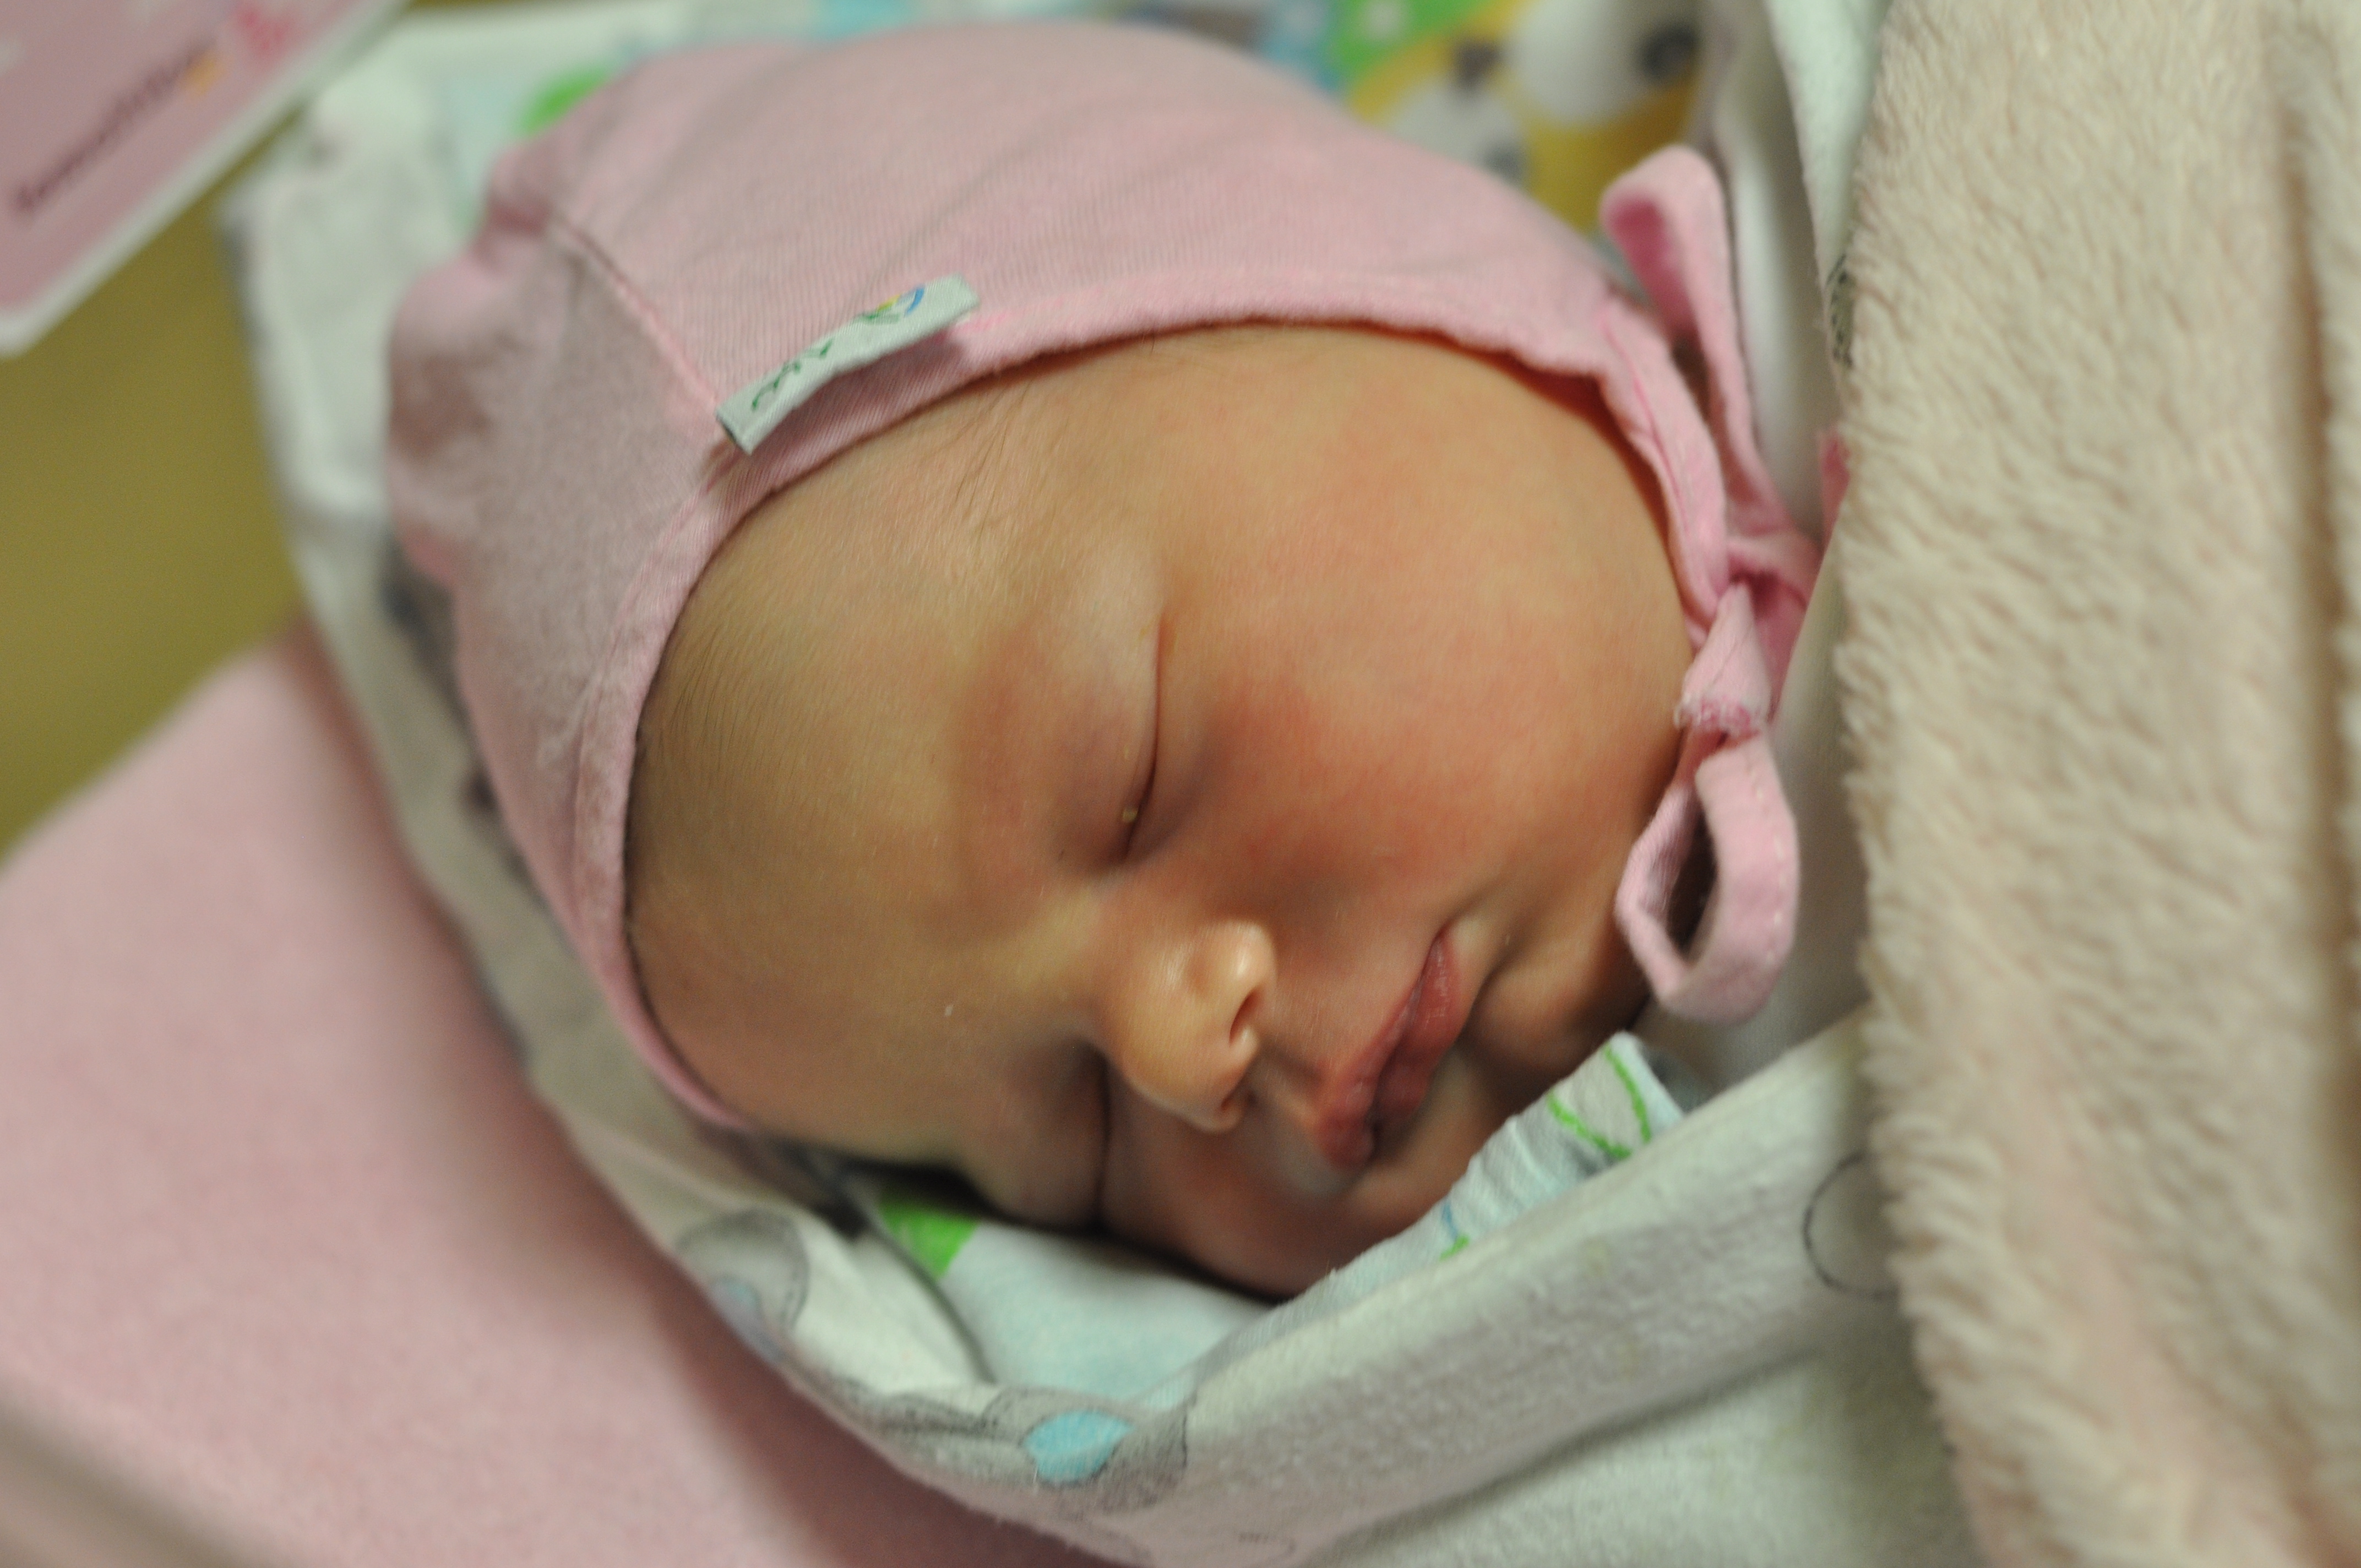 Paulinka Kowalska jest córeczką Justyny i Adama z Nędzy. Narodziła się 23 stycznia o 23.40. Na początek ważyła 3320 g i mierzyła 57 cm. W domu czeka na siostrę Kubuś.